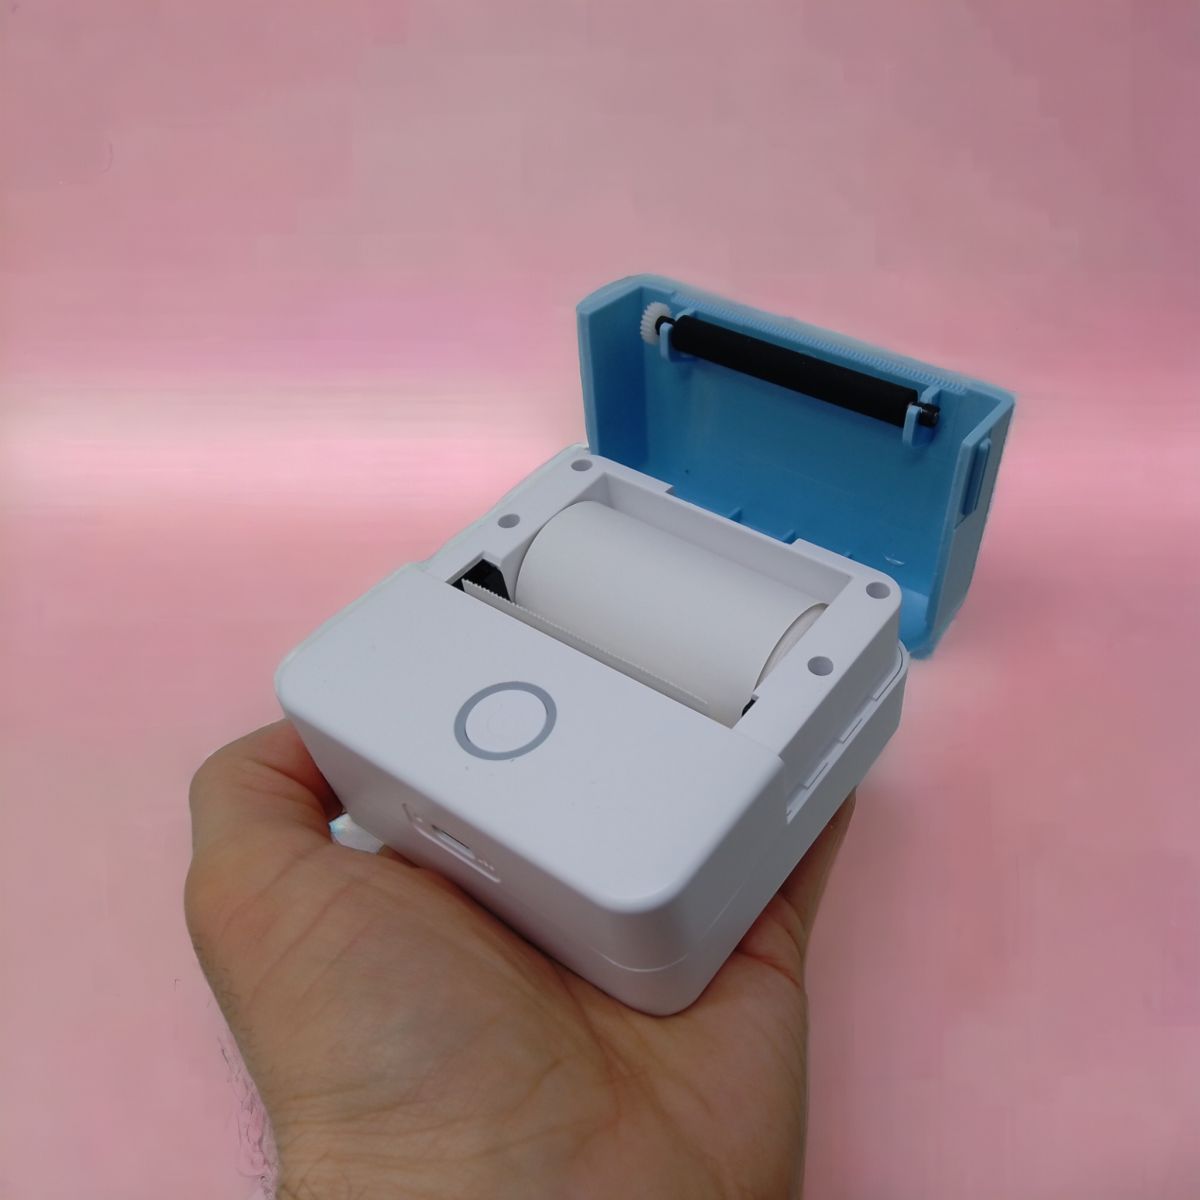 Портативний термопринтер "Portable mini printer" (блакитний)